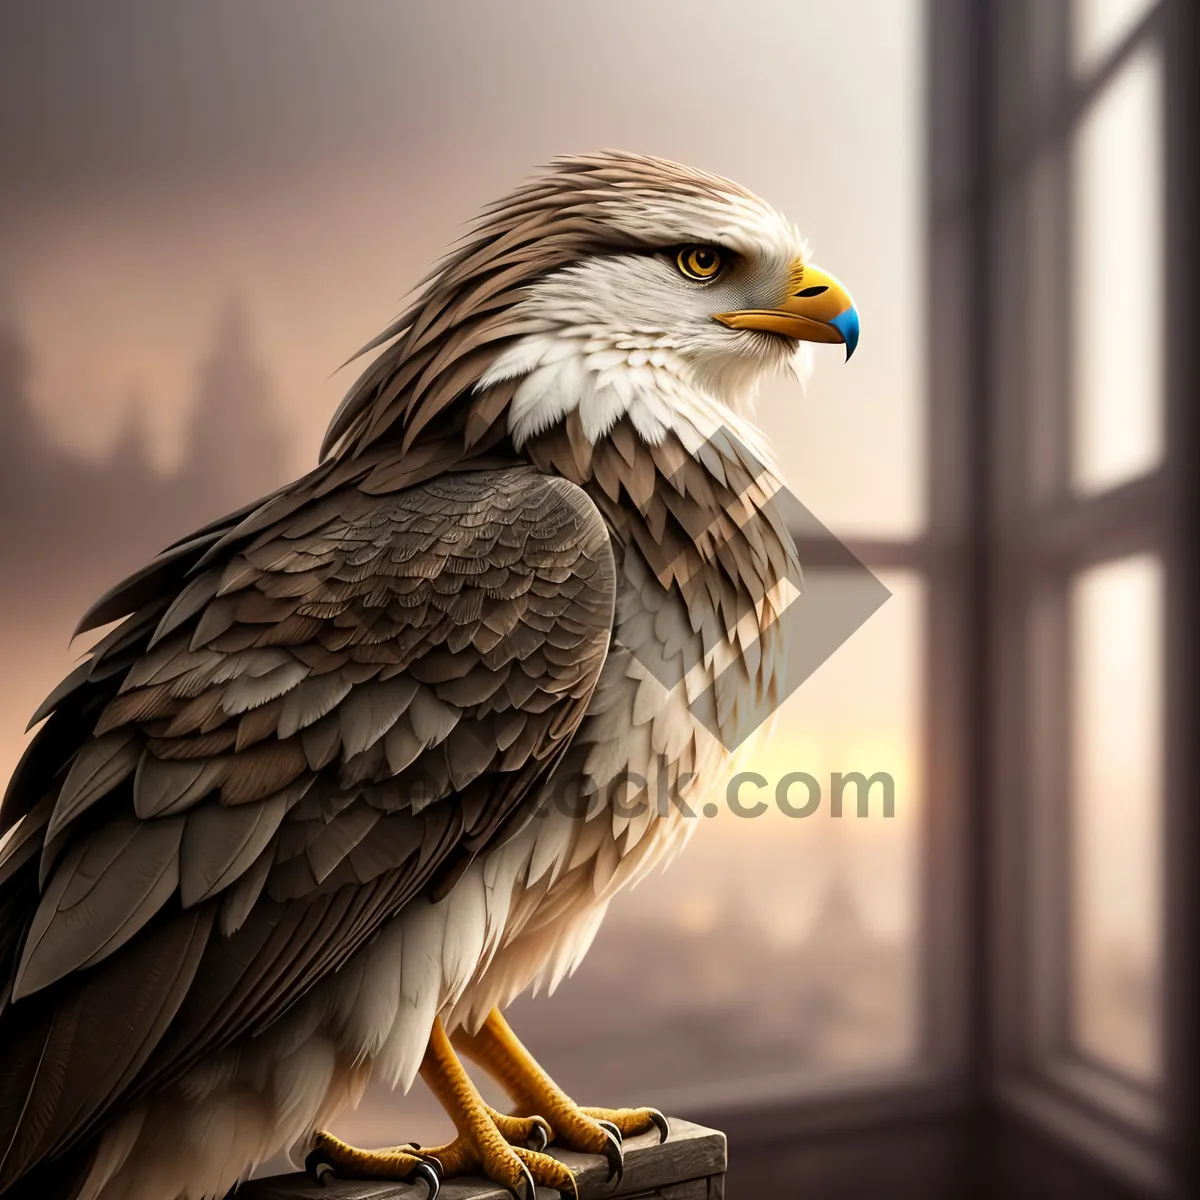 Picture of Wild Hunter: Majestic Falcon in Flight